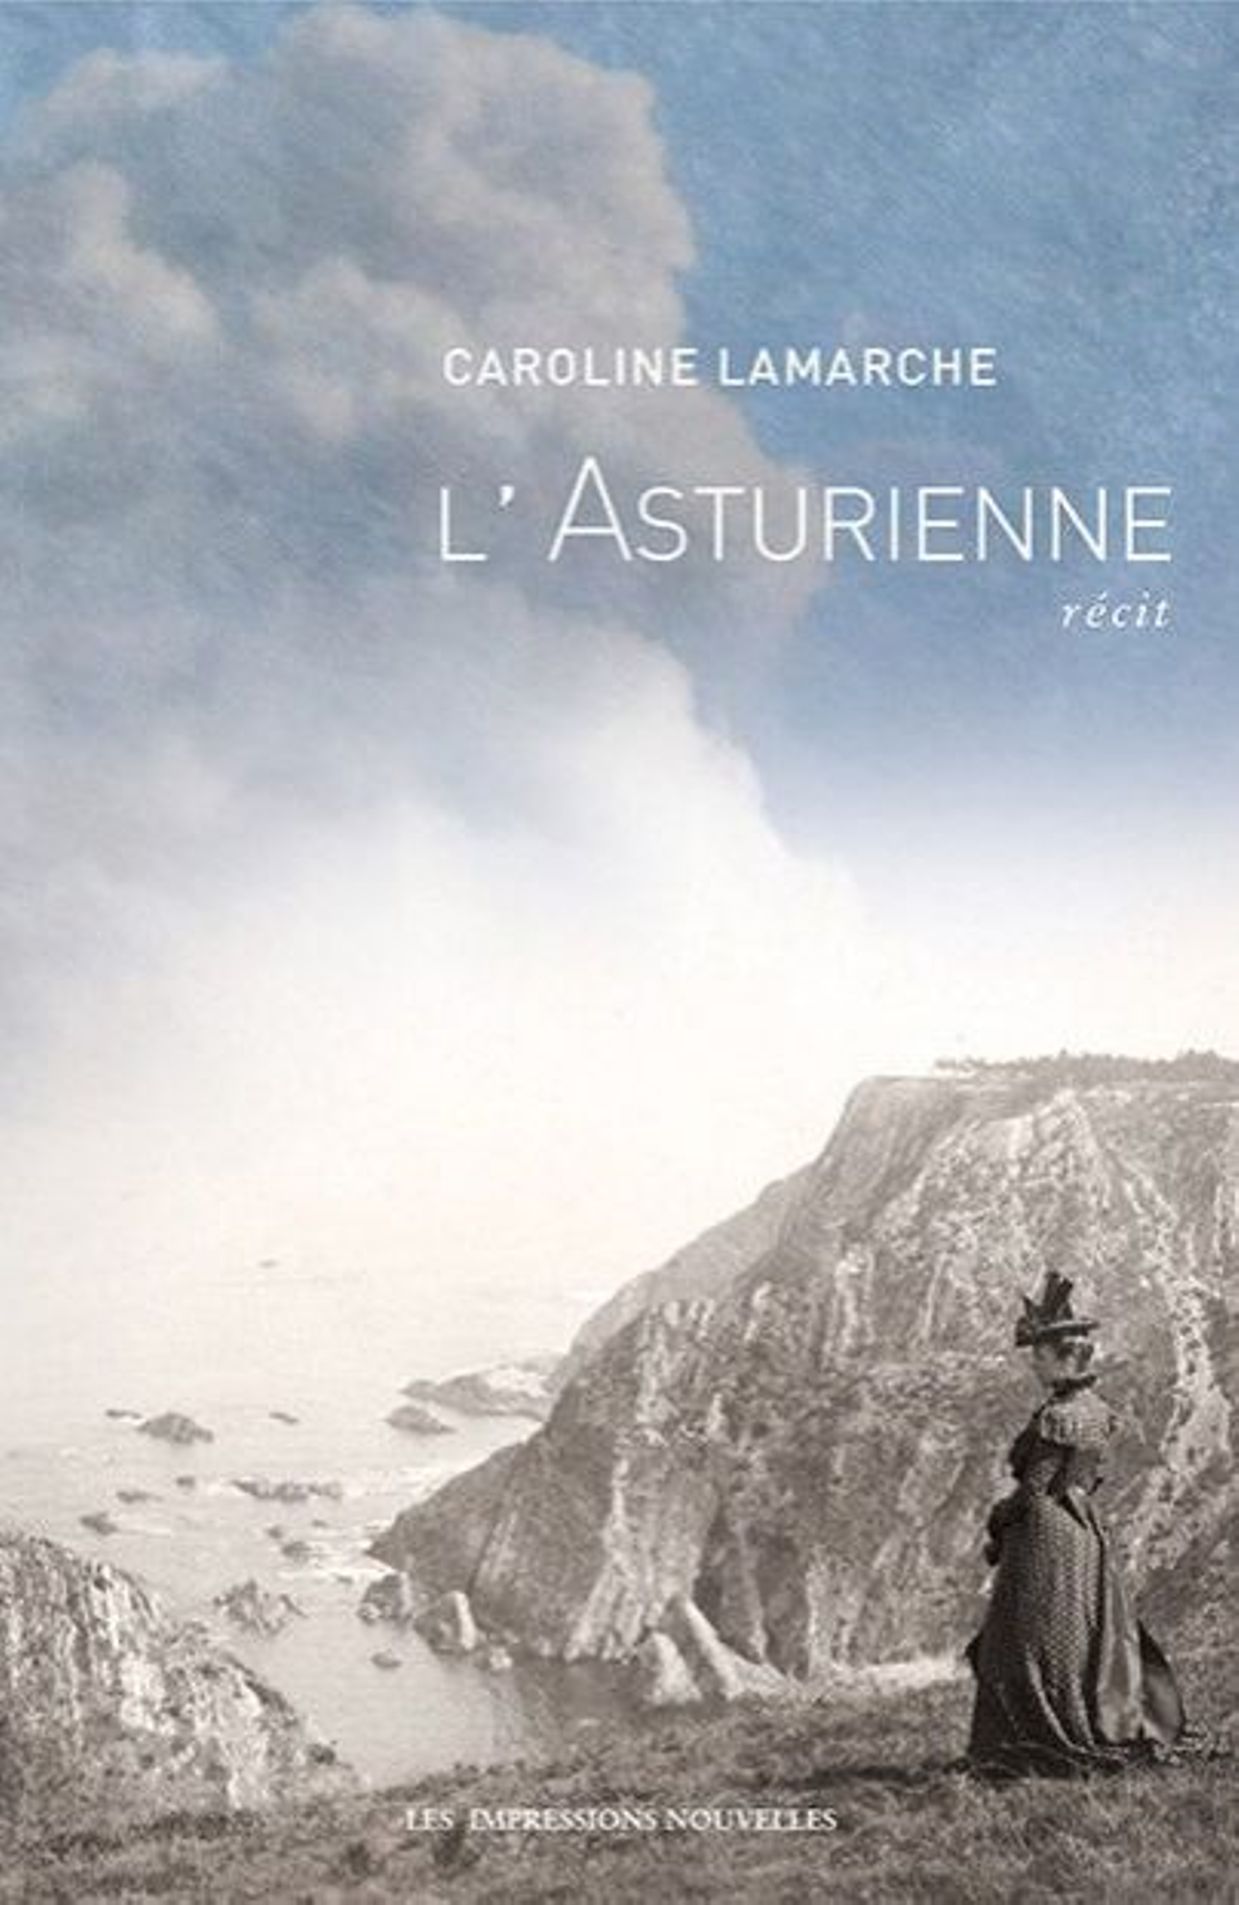 Livre "L'Asturienne" de Caroline Lamarche